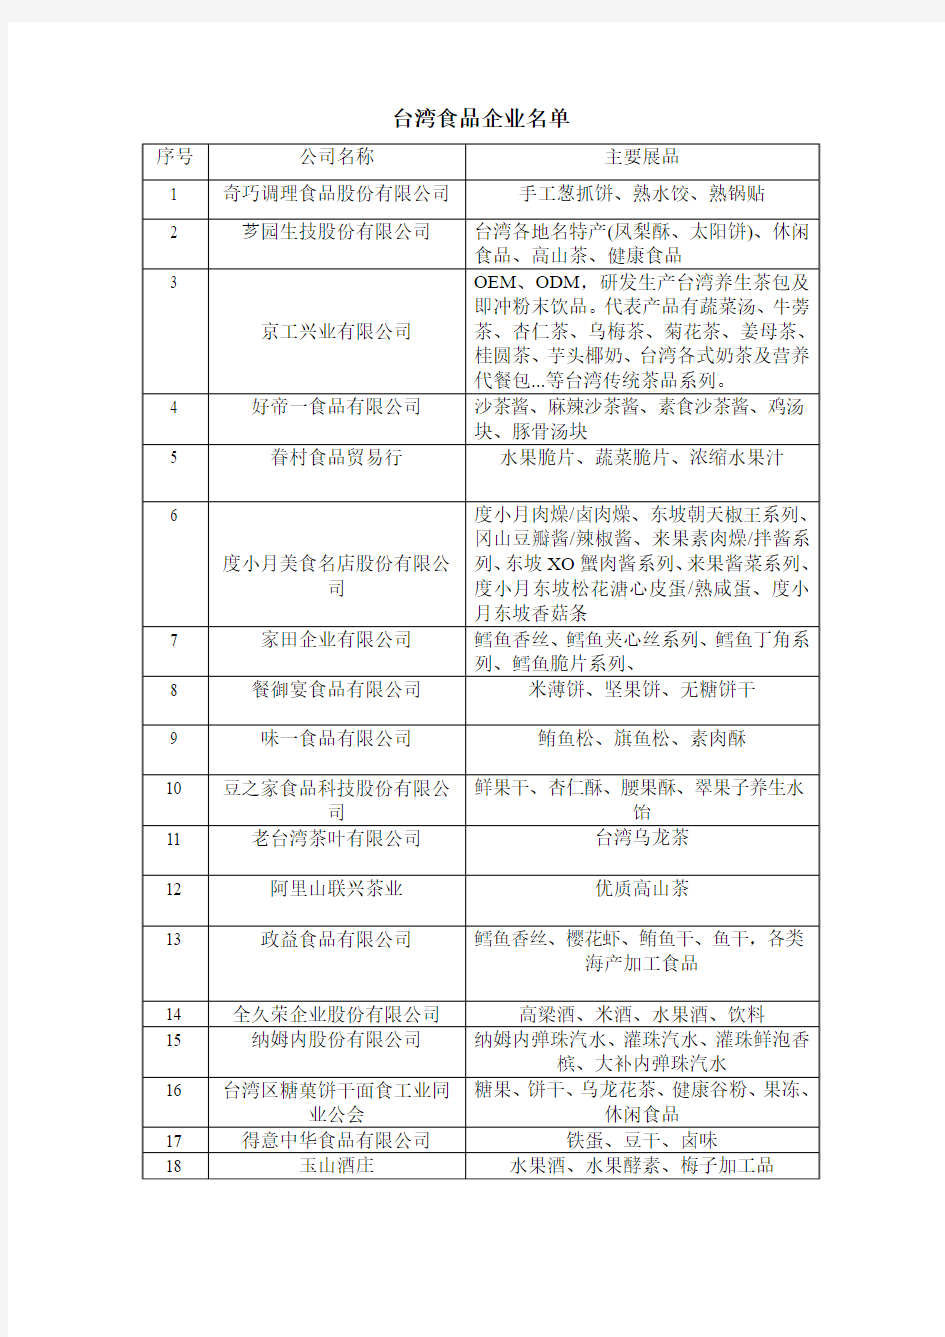 台湾食品企业名单